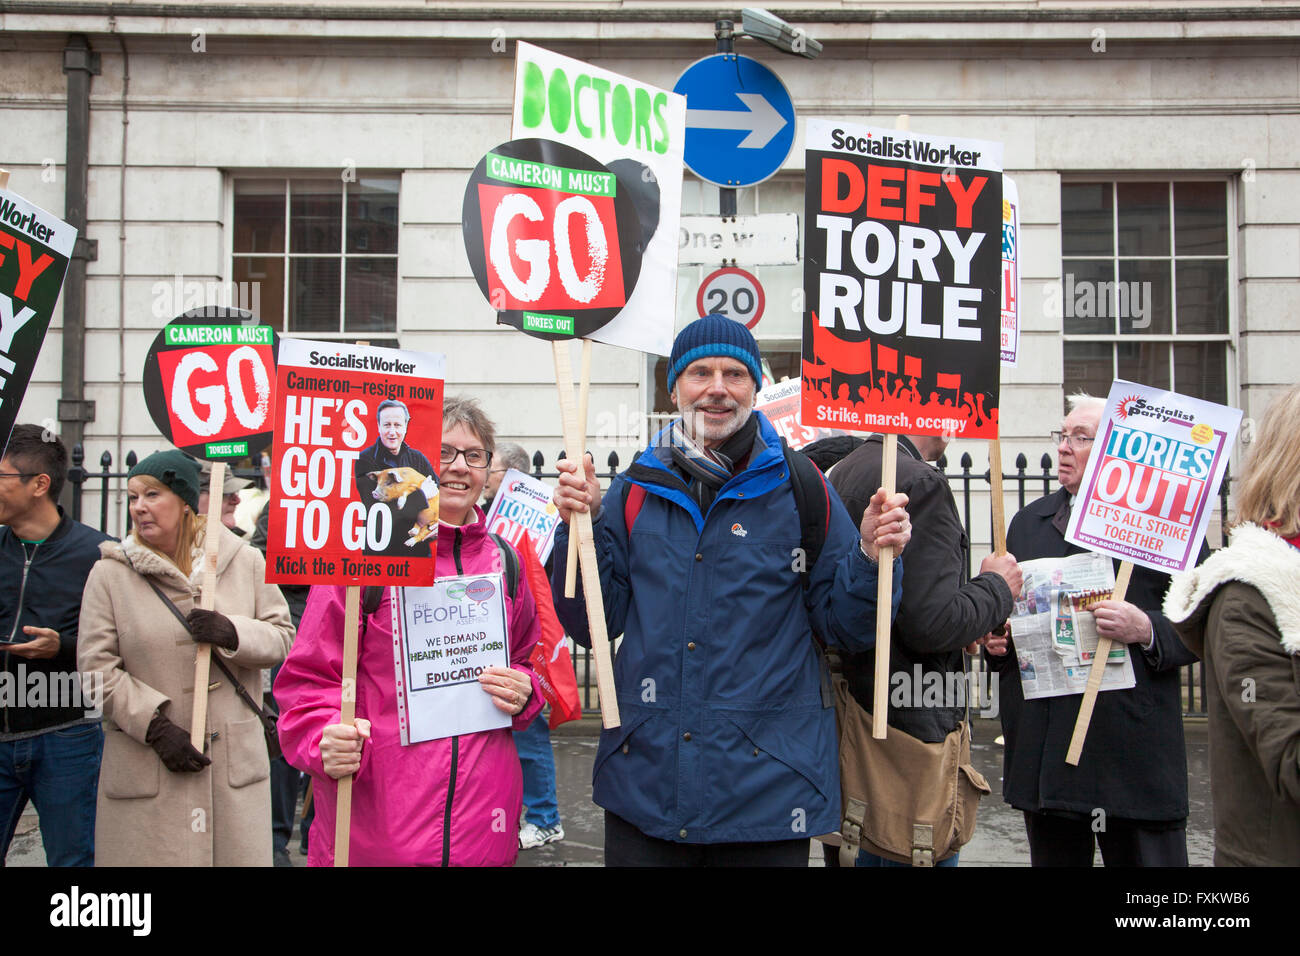 Londres, Reino Unido, 16 de abril de 2016 Cameron debe ir manifestación nacional, las personas se han reunido para marzo desde Euston Road hasta Trafalgar Square para salud, hogar, educación y empleos, oponiéndose a la austeridad, el Gobierno Tory David Cameron y crédito: Nathaniel Noir/Alamy Live News Foto de stock